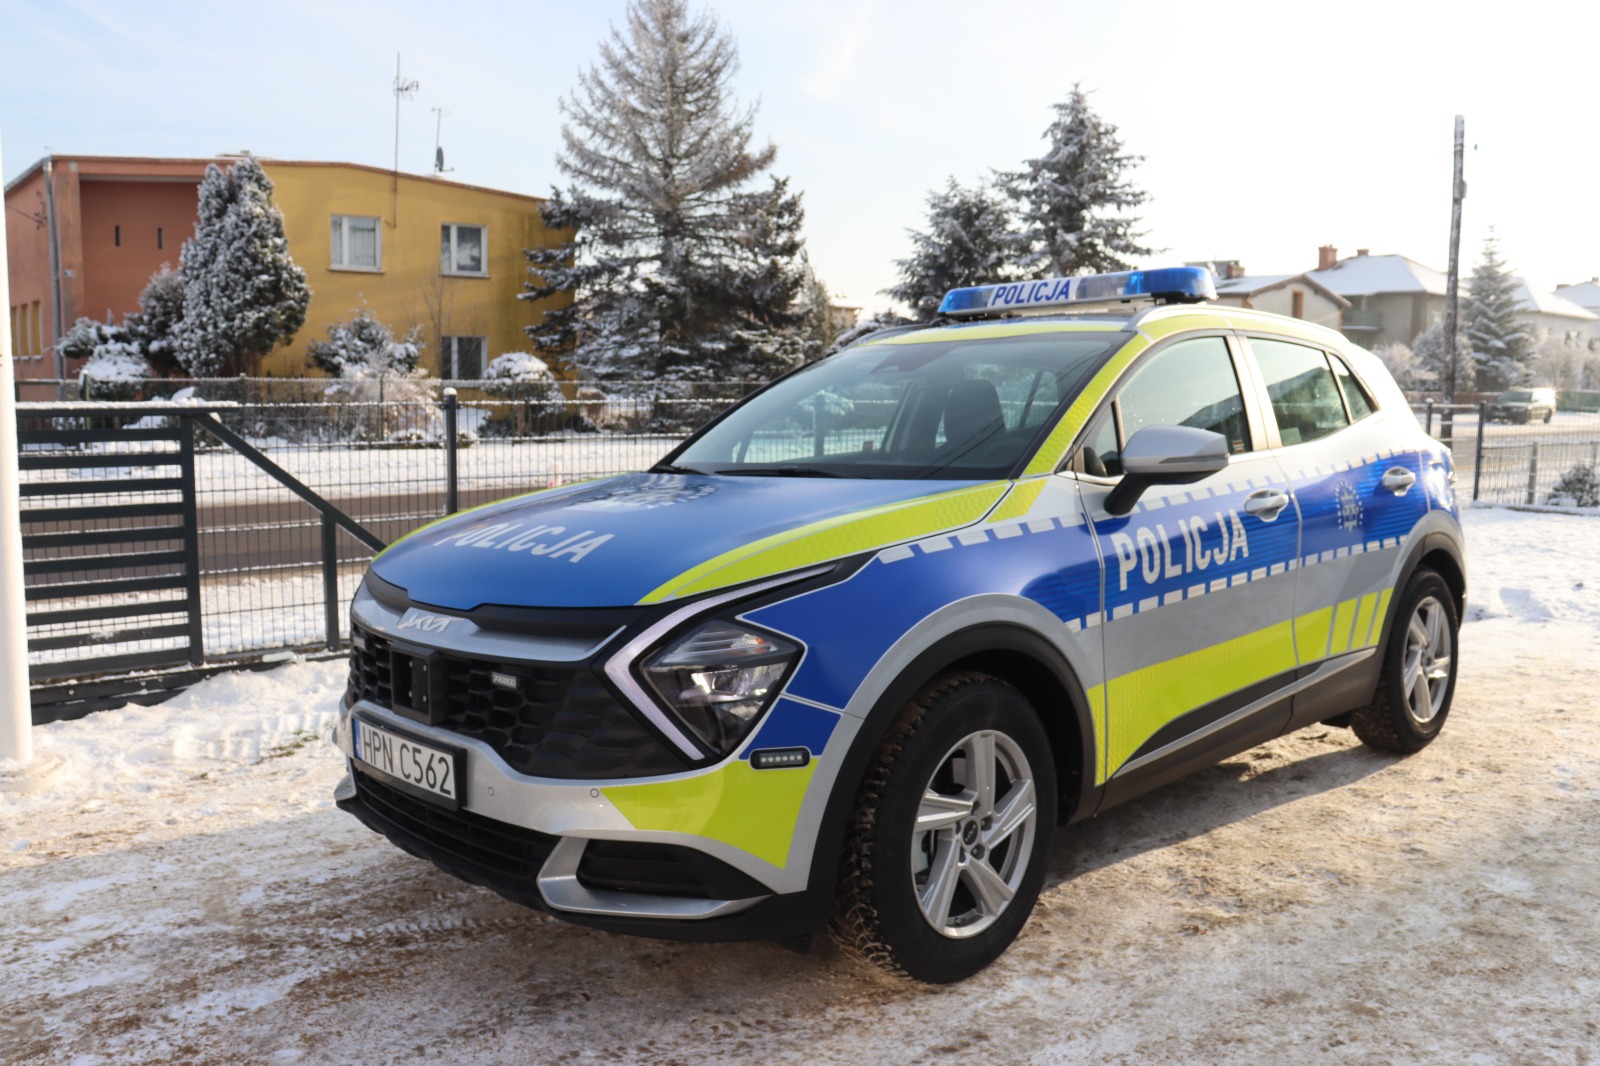 Samochód został zakupiony ze środków MSWiA - Komendy Głównej Policji oraz dzięki wsparciu od Powiatu Bytowskiego i Gmina Lipnica.